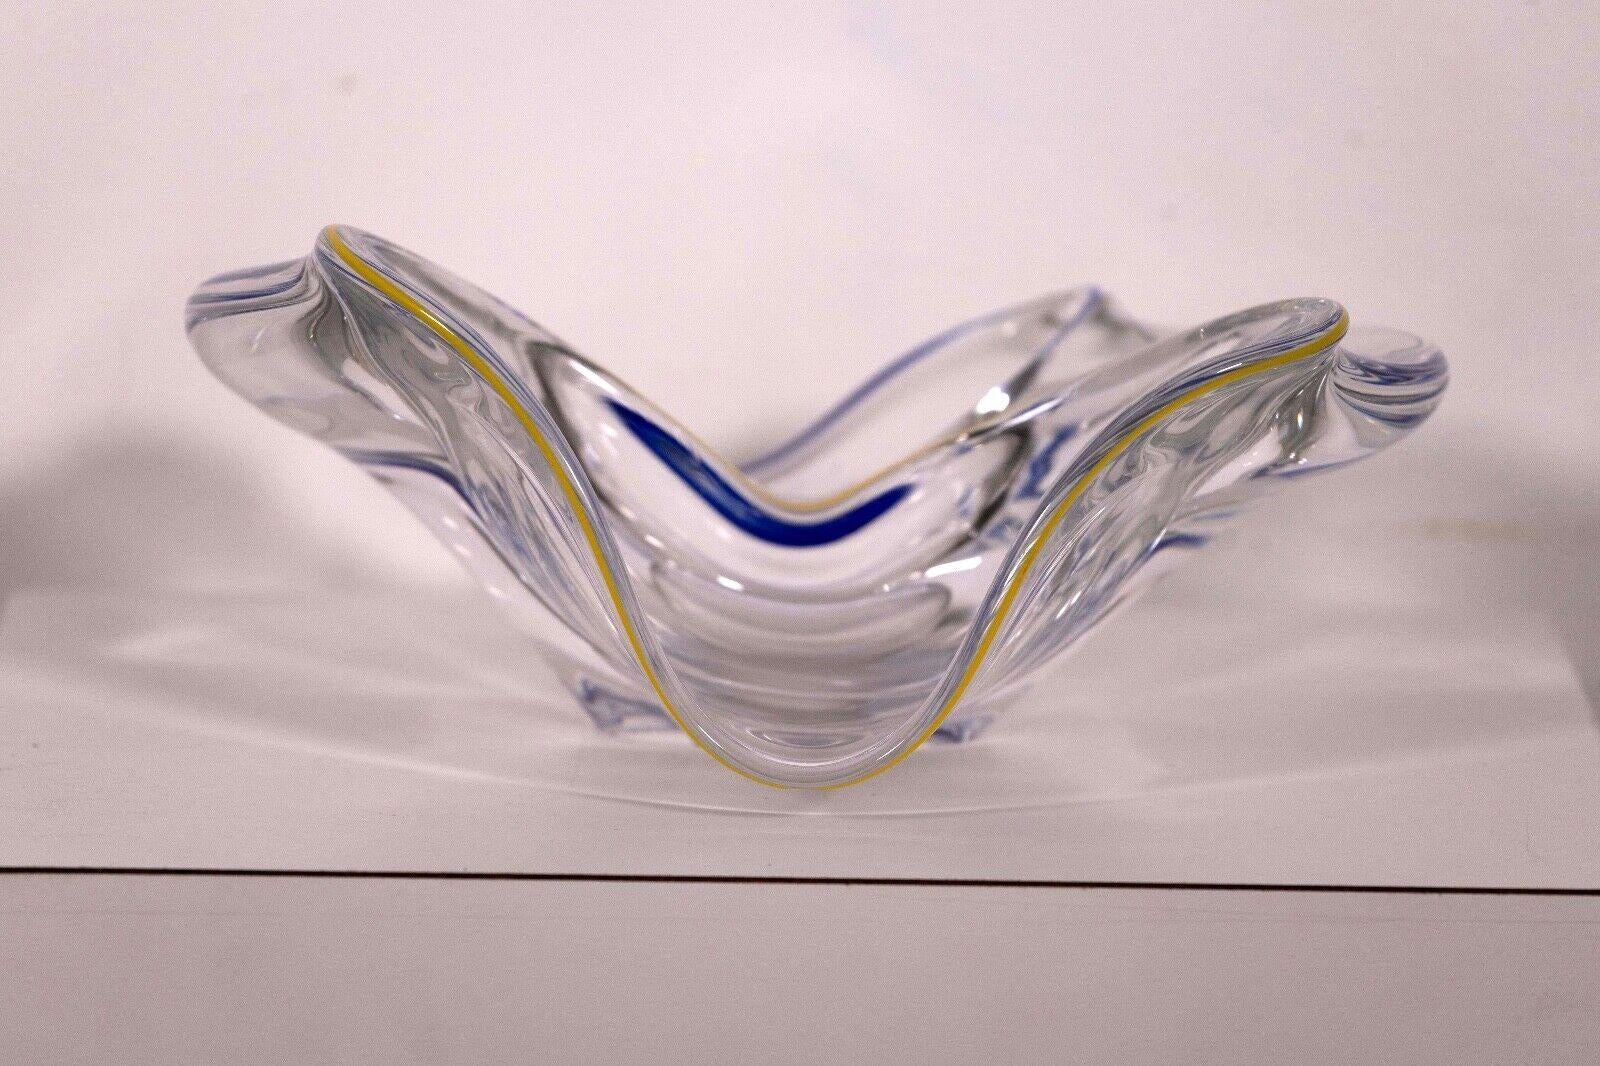 La sculpture abstraite en verre bleu et jaune de Frantisek Zemek avec double bol est un chef-d'œuvre captivant qui allie harmonieusement la forme et la fonction. Signature gravée sur le fond. Fabriqué à la main avec précision, ce plat met en valeur